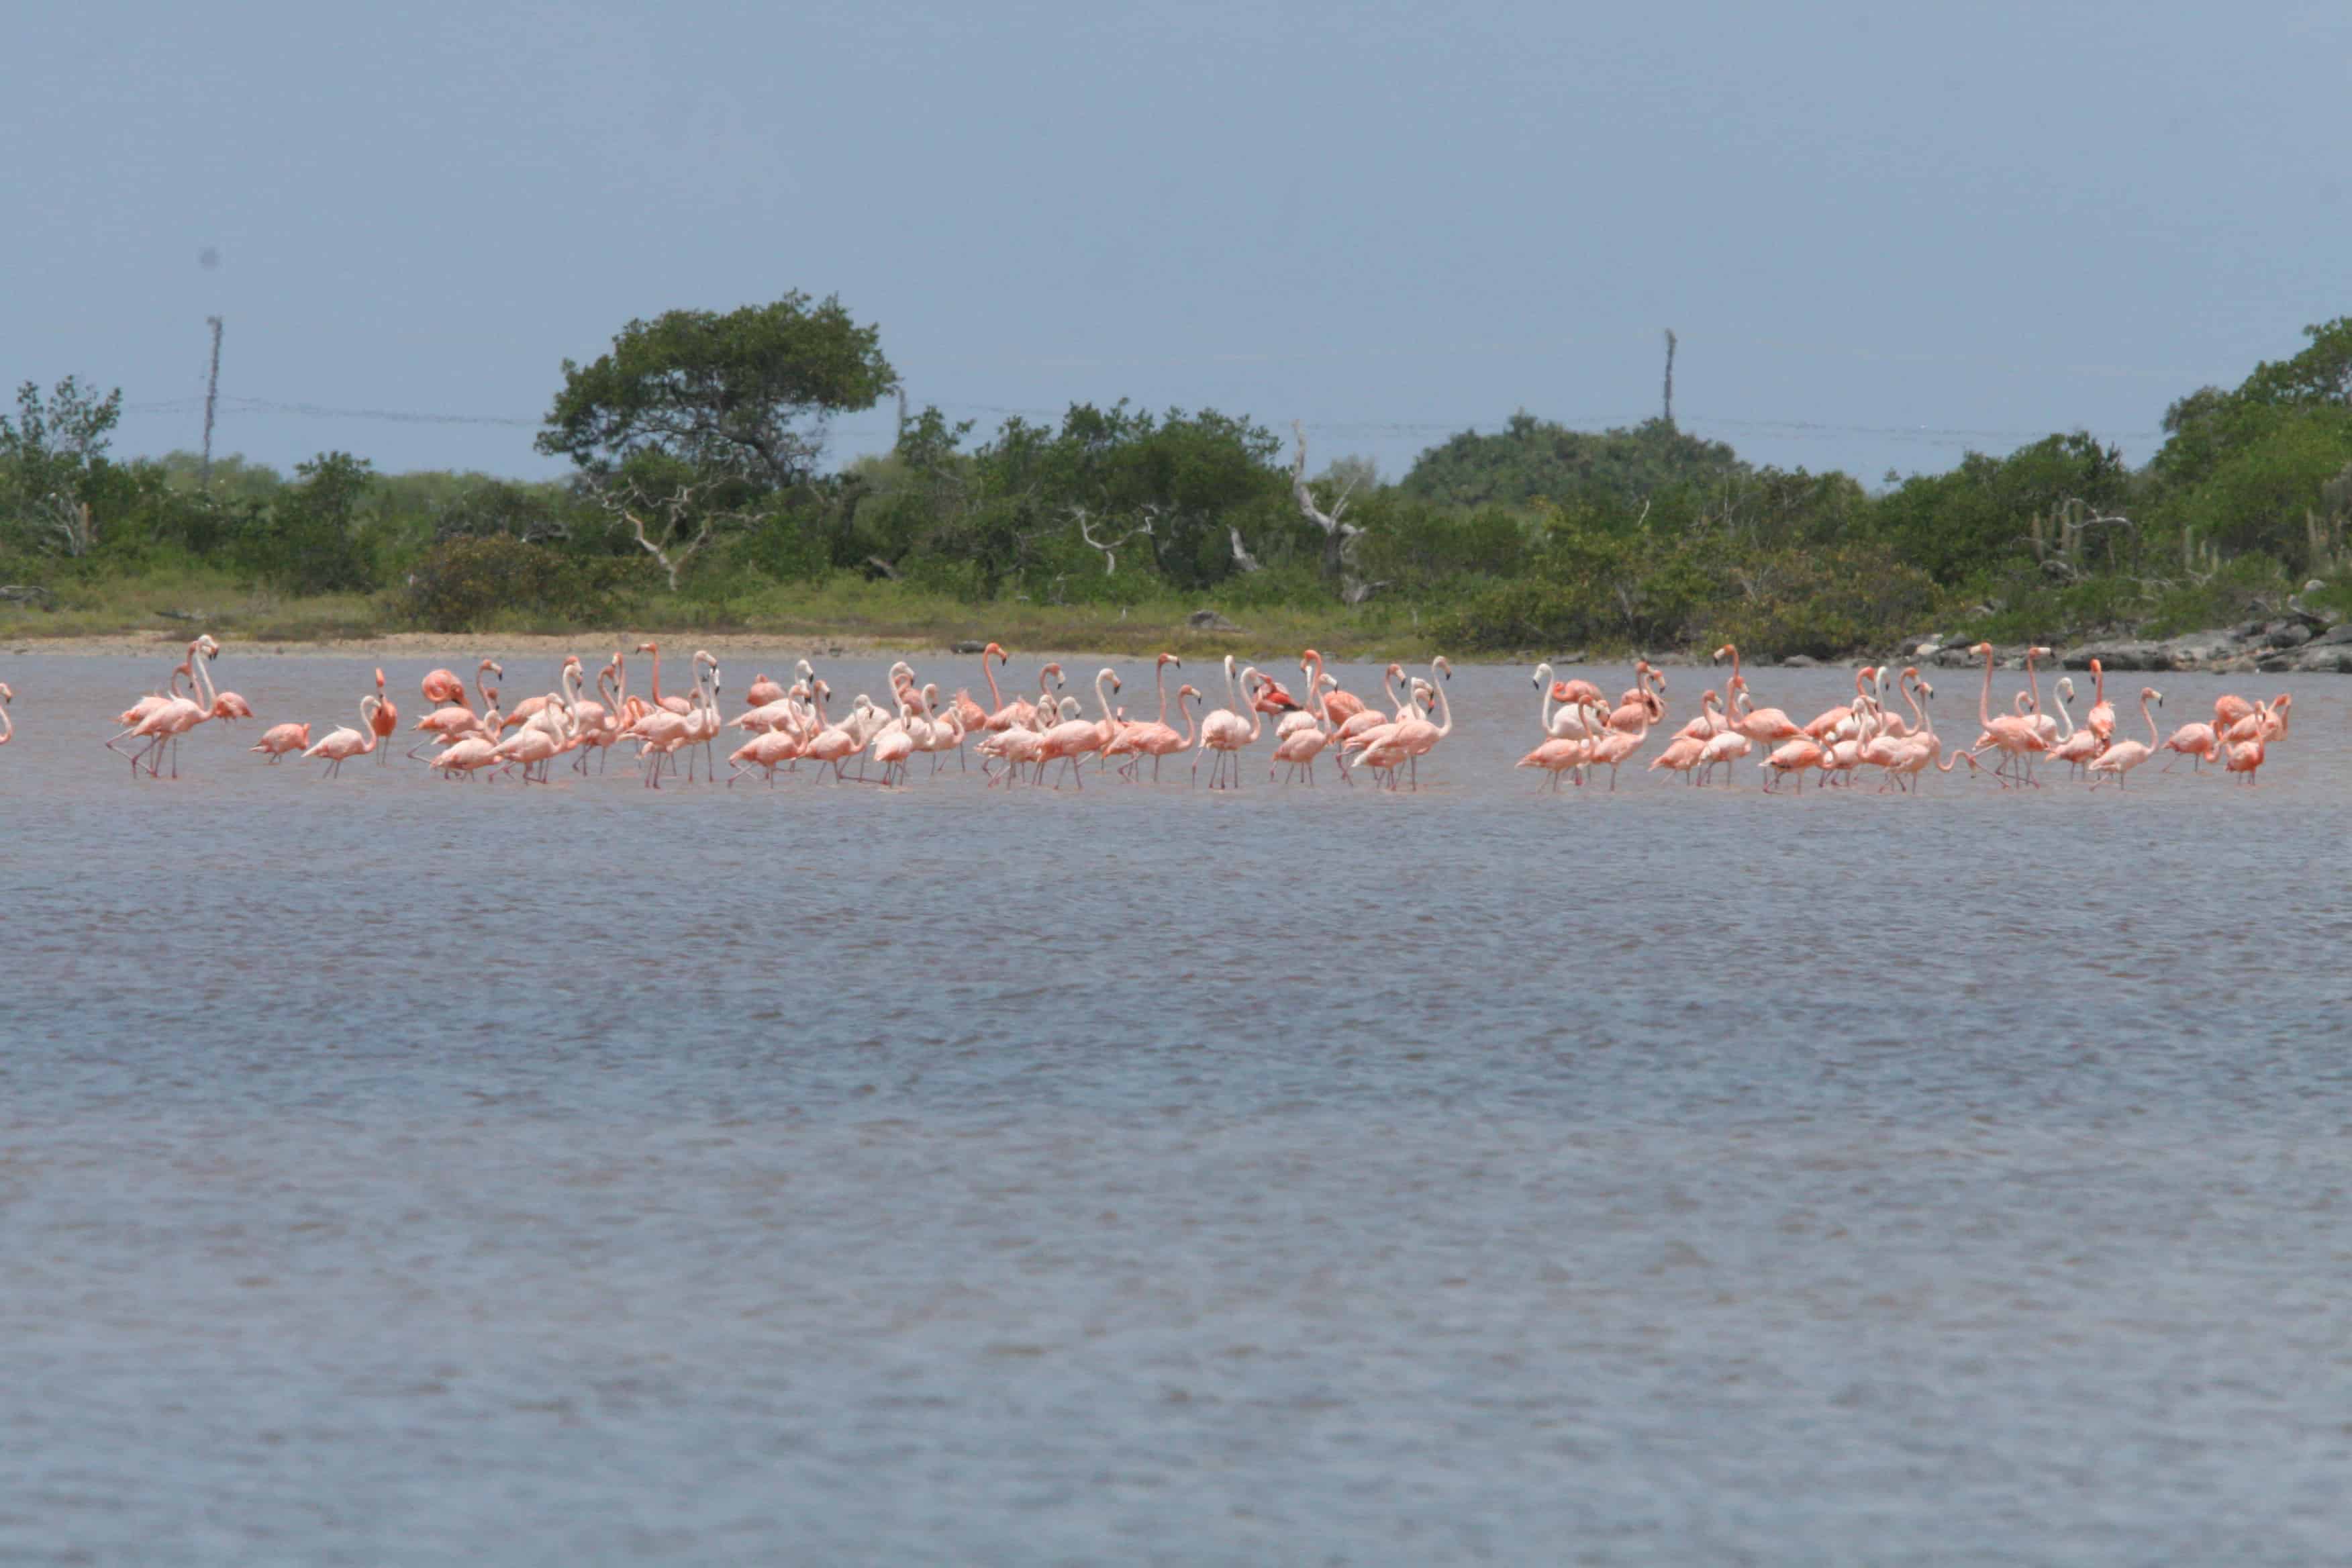 Flamingos at the Western Salt Ponds, Anegada. Copyright: Dr Mike Pienkowski